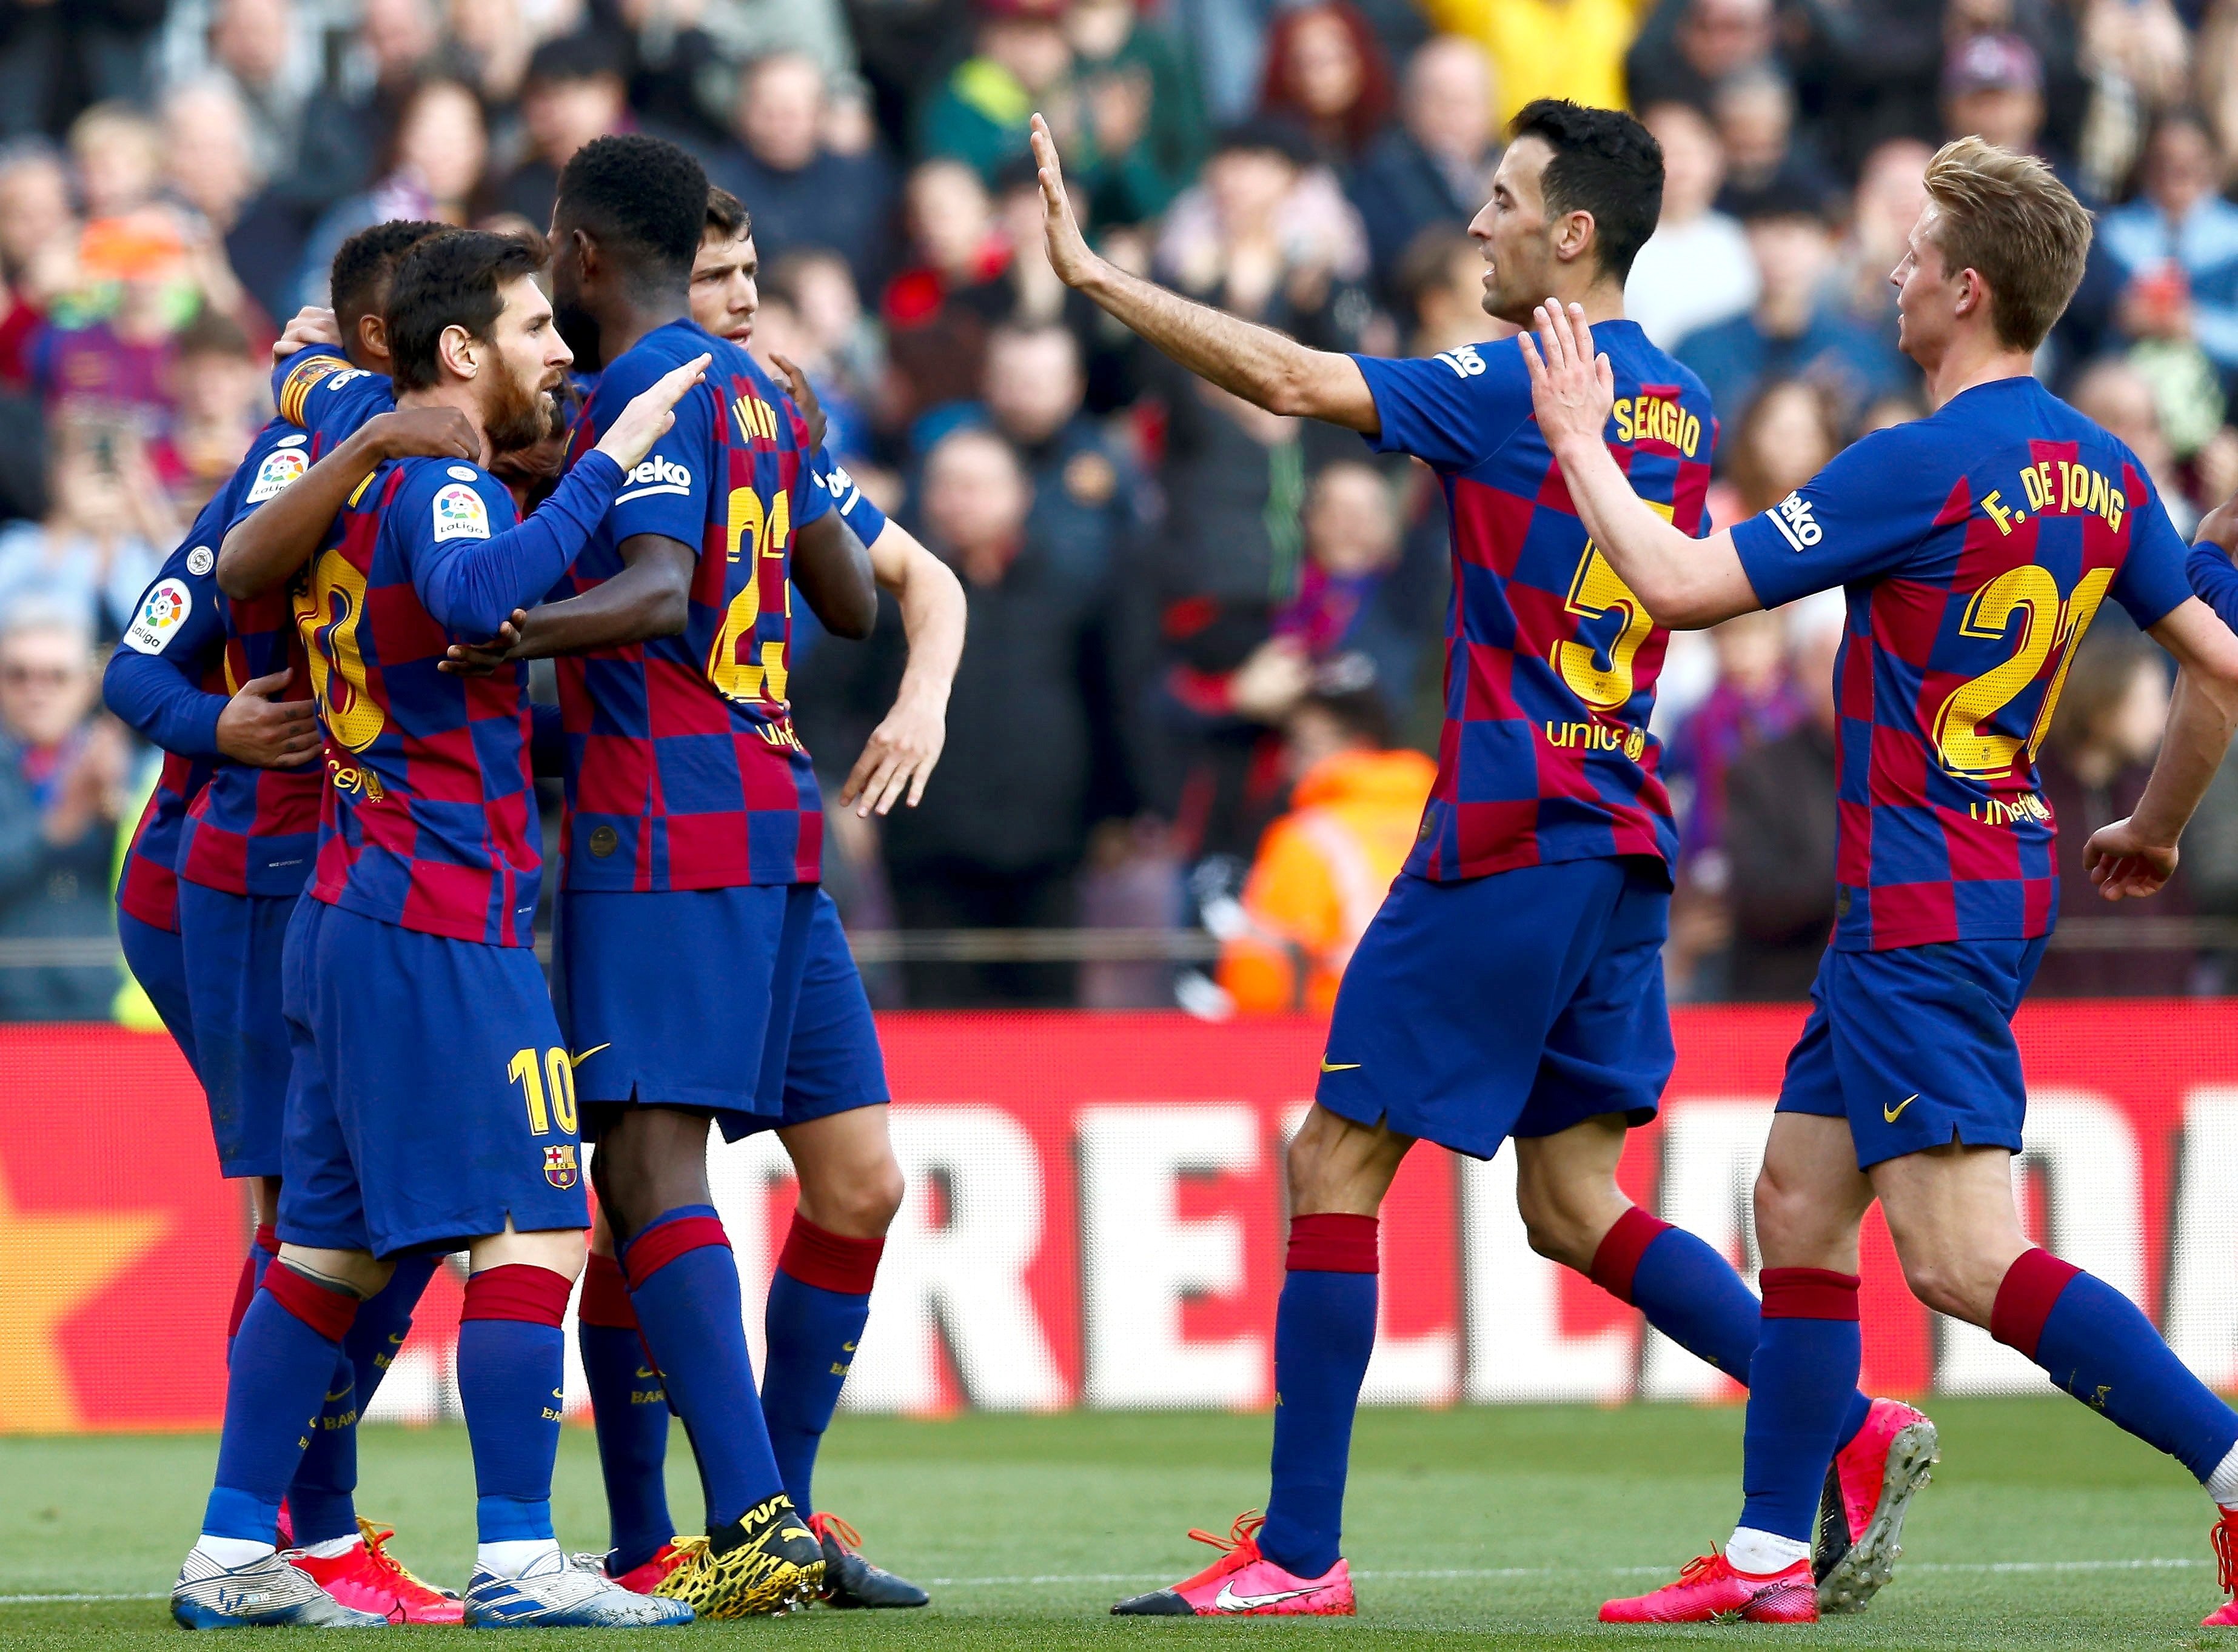 El Barça jugará un partido benéfico en Igualada para luchar contra el coronvirus